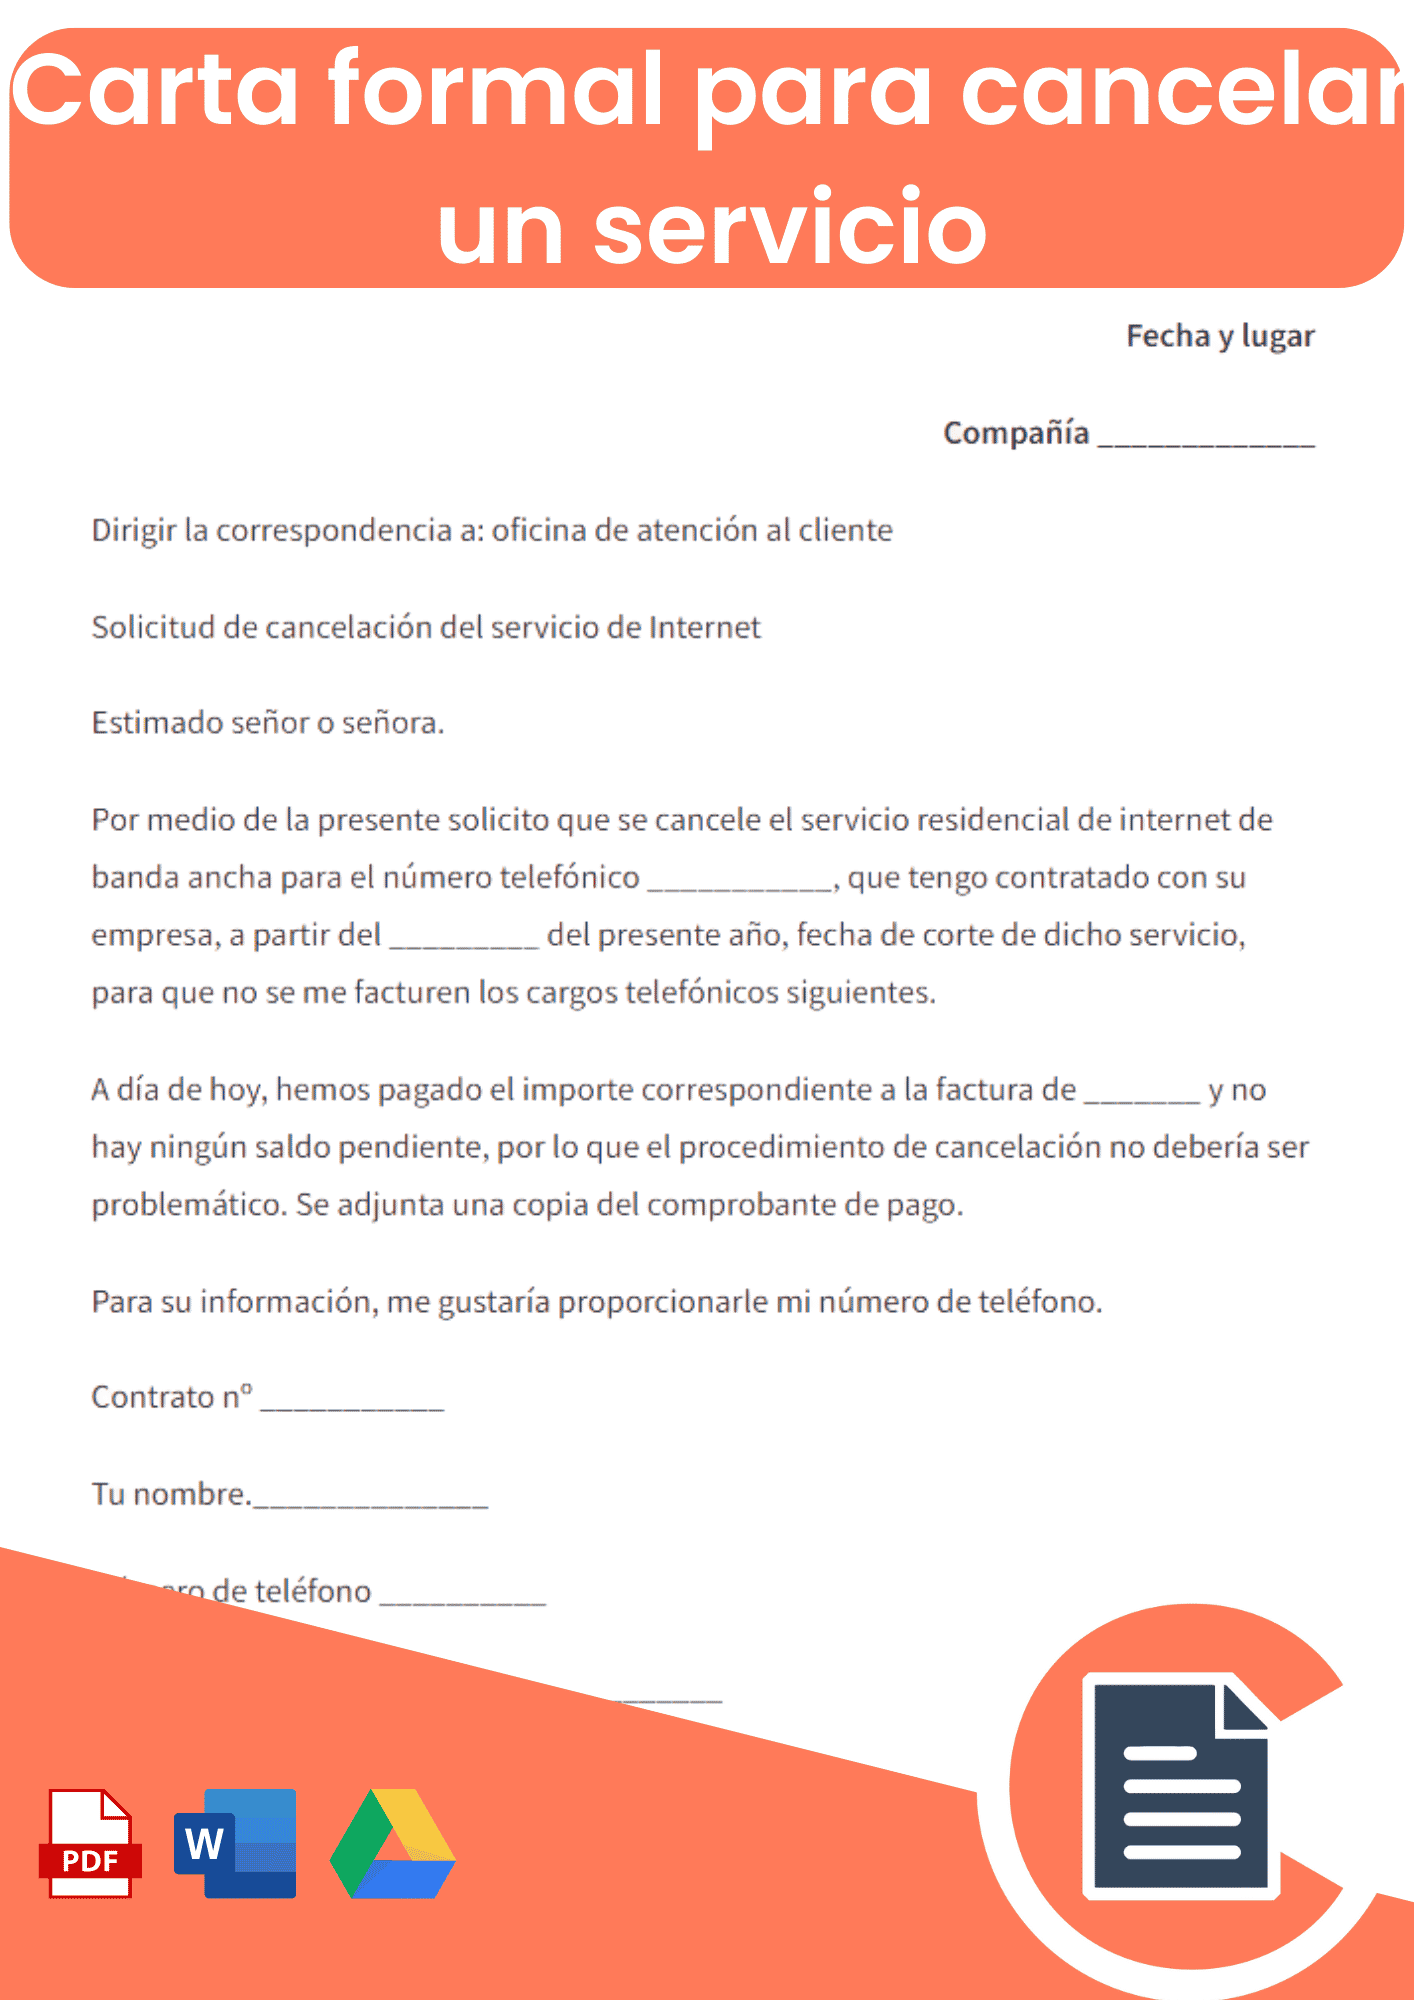 Carta formal para cancelar un servicio internet